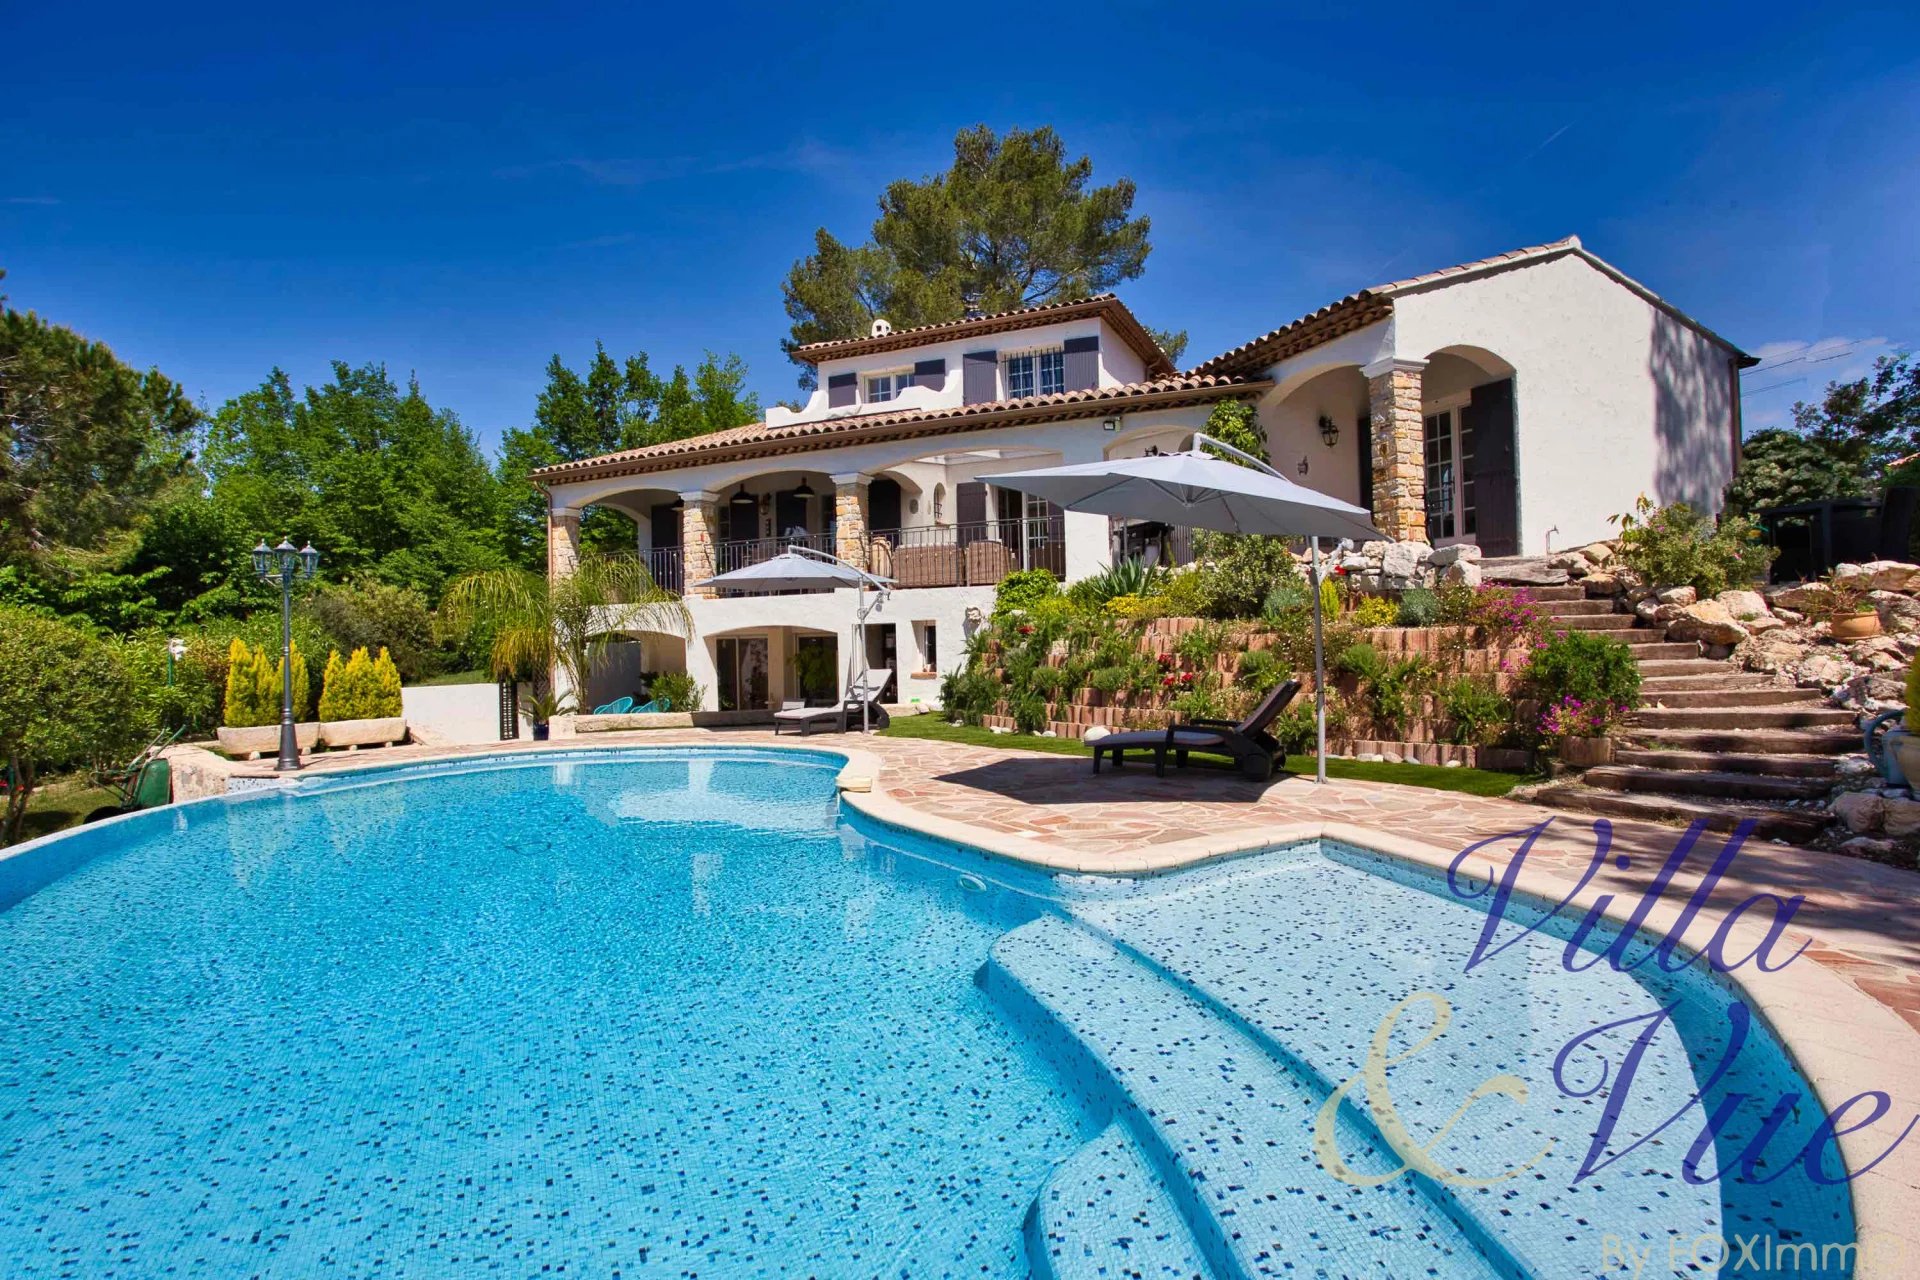 Villa di lusso, in assoluta tranquillità, bellissimo terreno pianeggiante, ampio parcheggio, piscina, studio indipendente